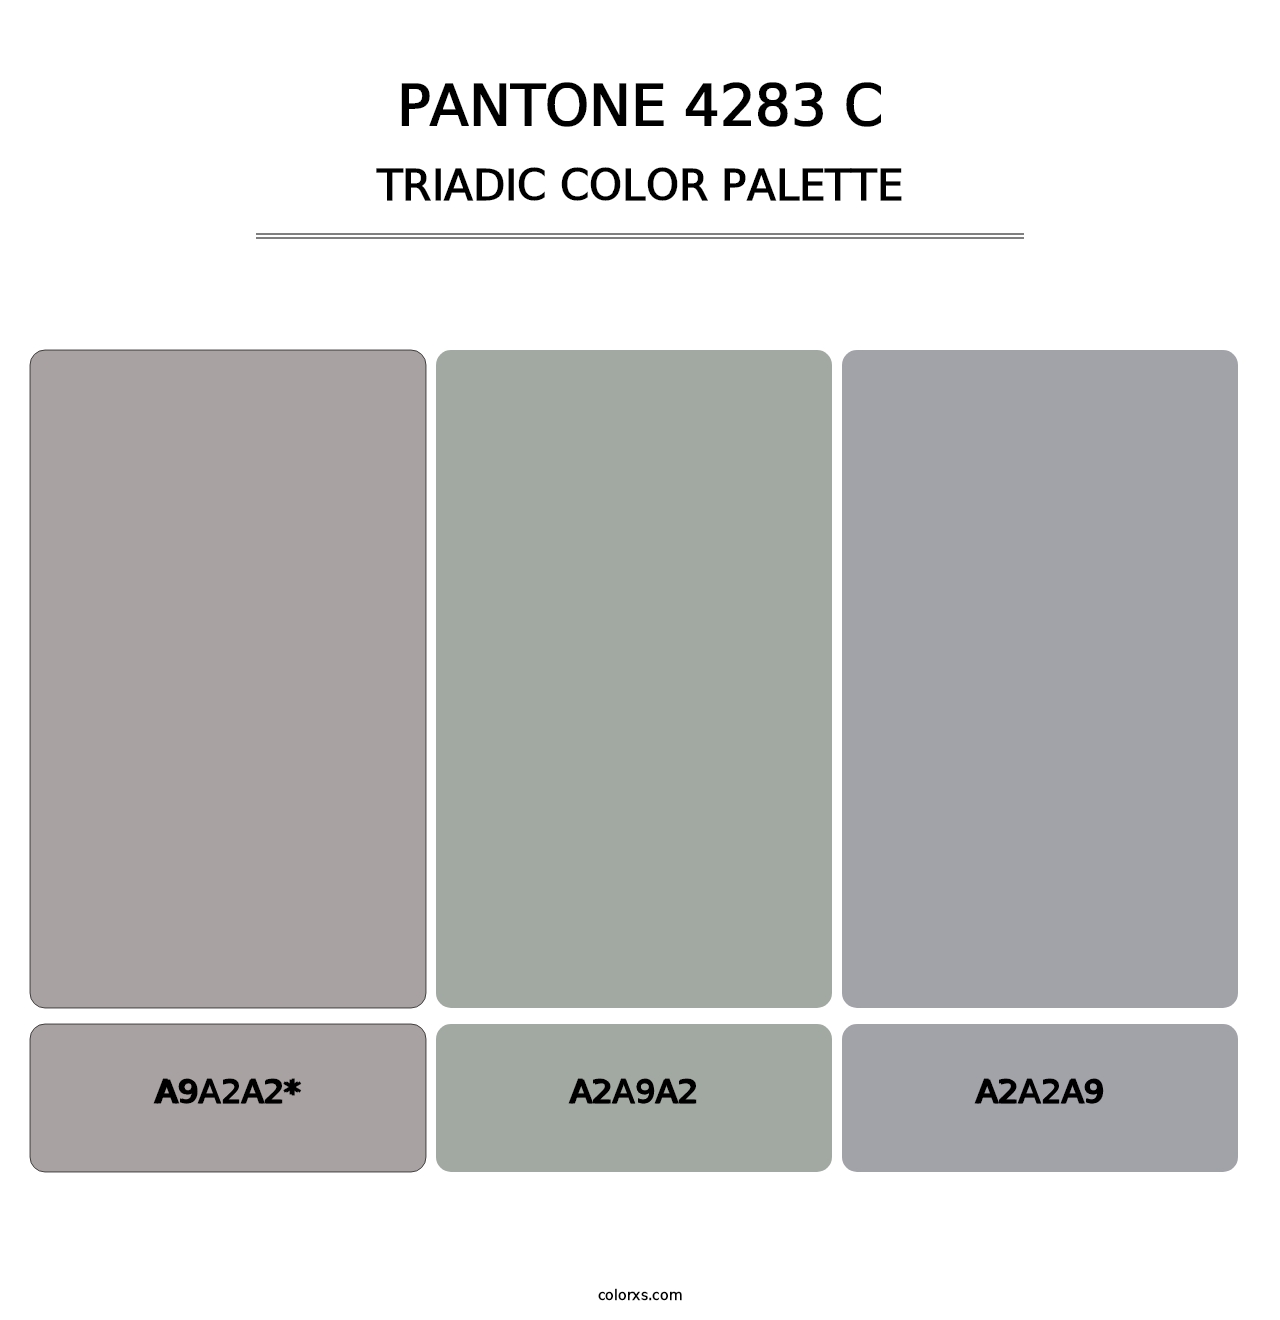 PANTONE 4283 C - Triadic Color Palette